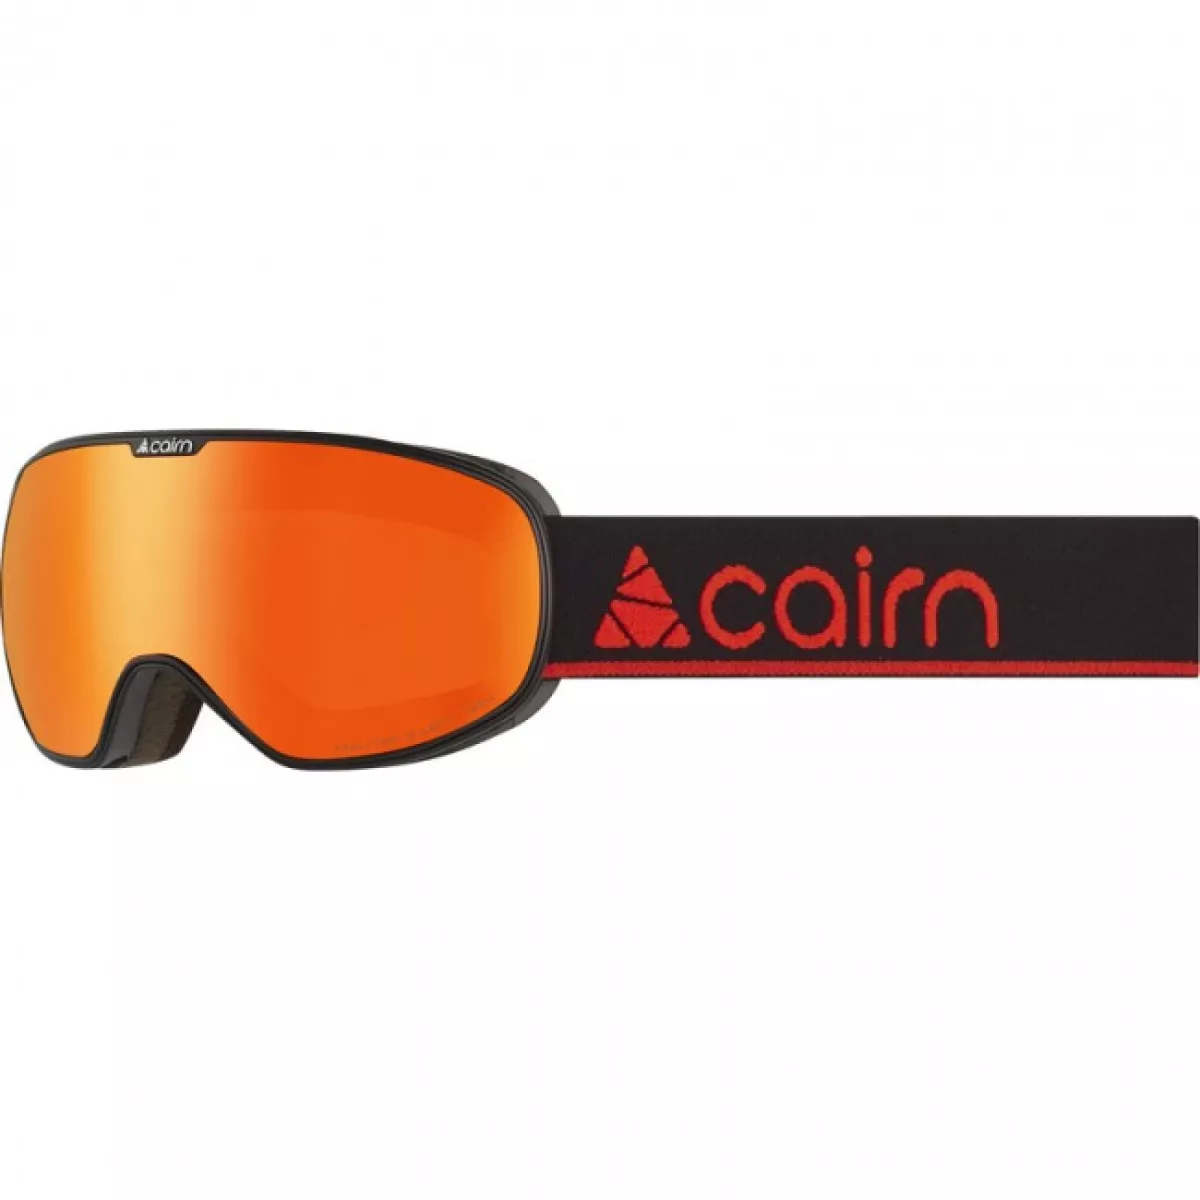 #3 - Cairn Magnetik, skibriller, junior, mat sort orange